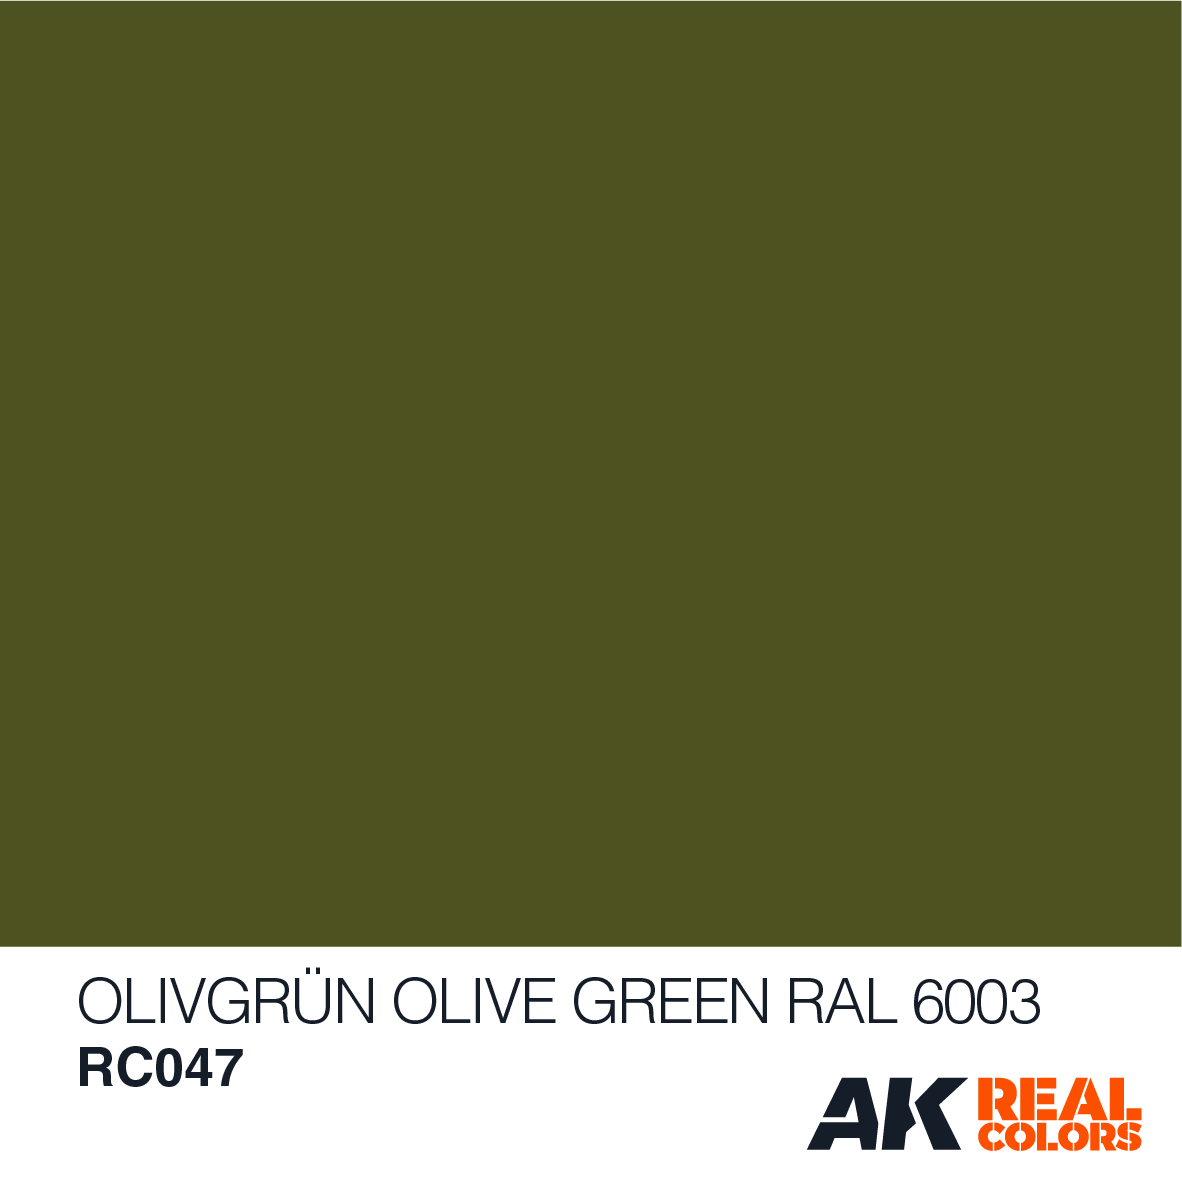 Olivgrün – Olive Green RAL 6003